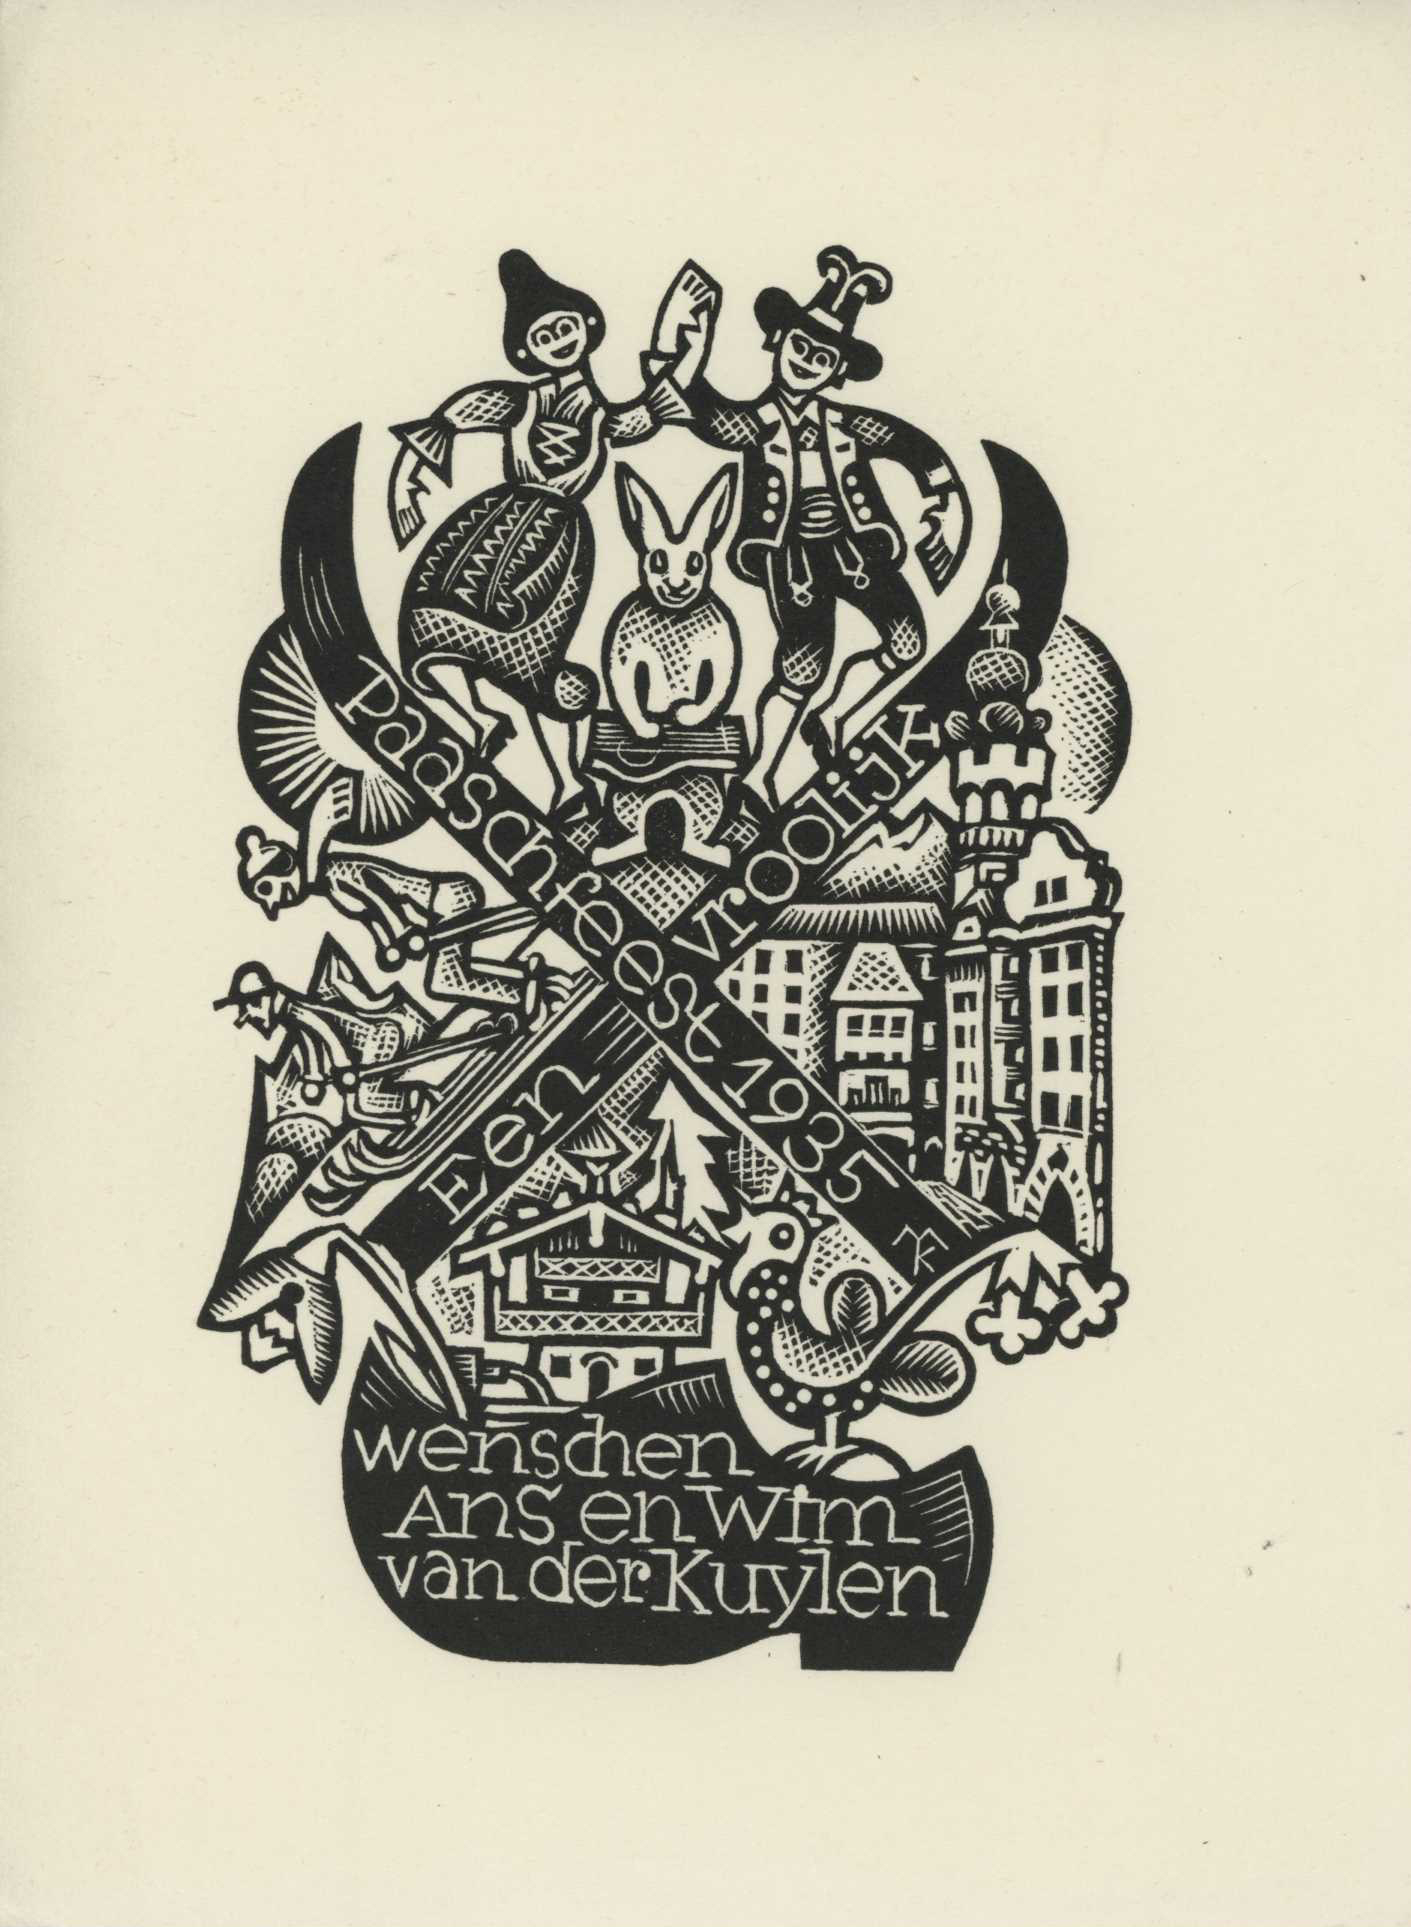 Featured image for “Vrolijk Paaschfeest 1935 - Van der Kuylen”